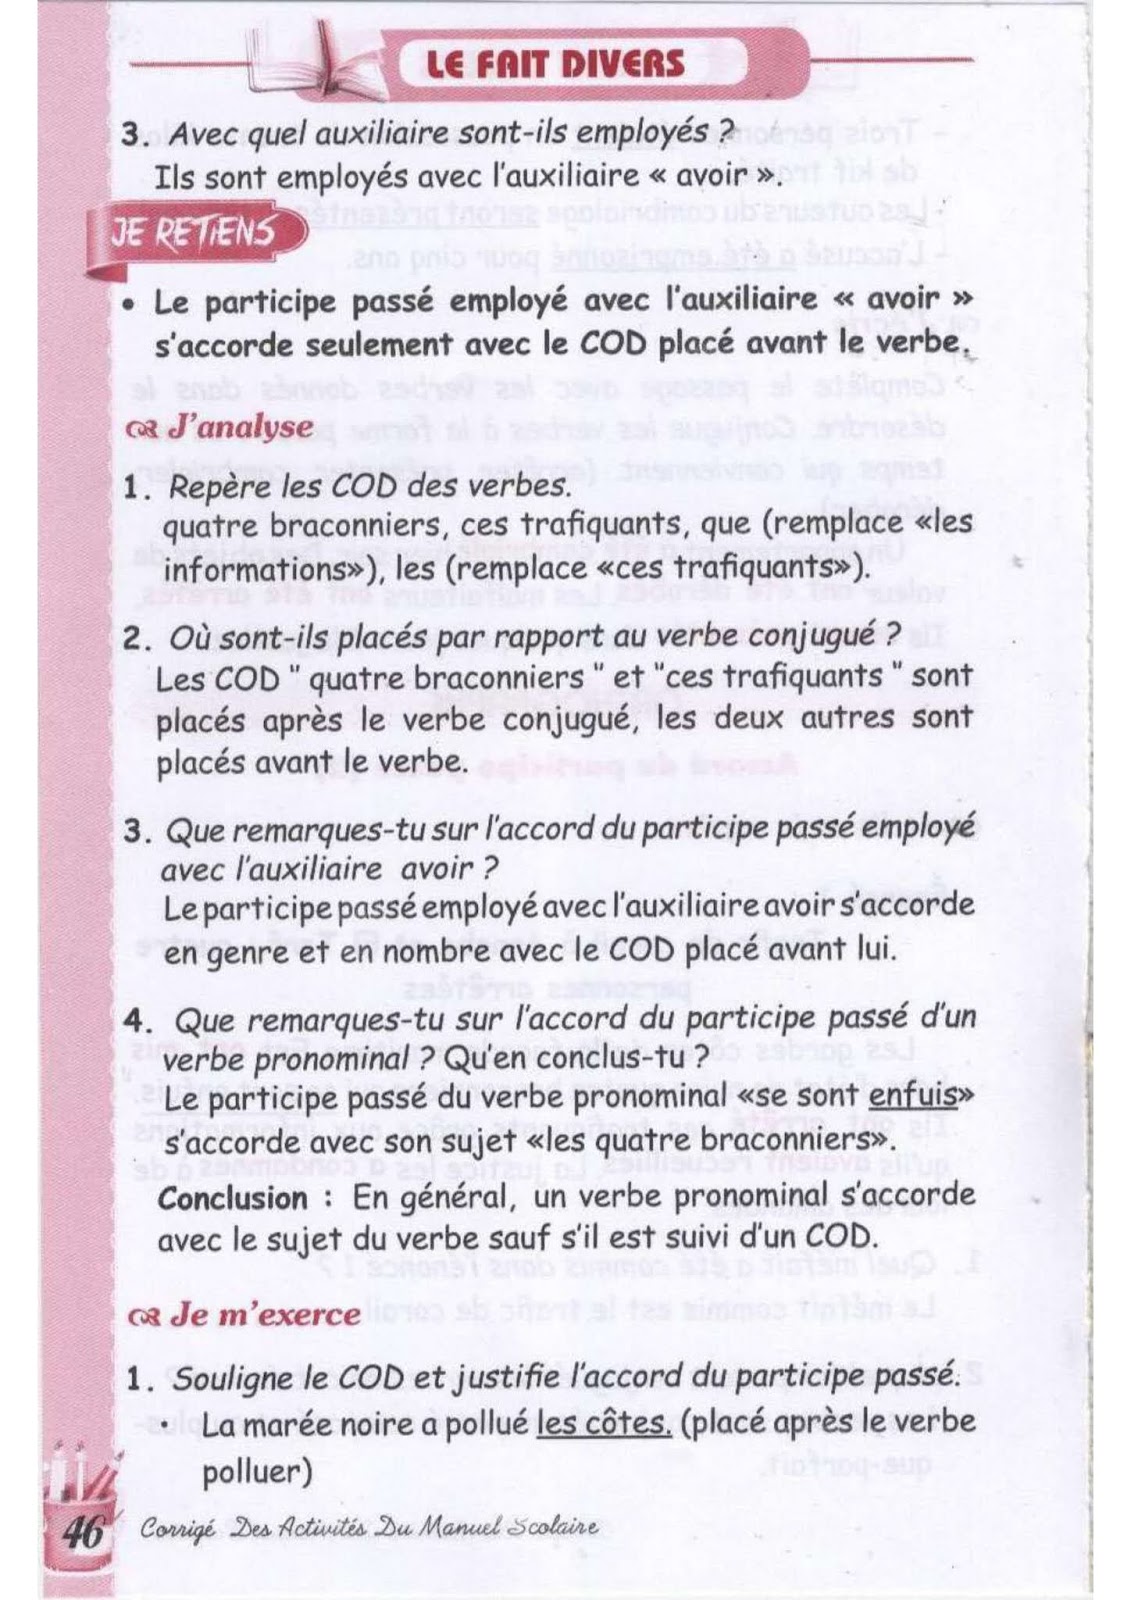 حل تمارين صفحة 43 الفرنسية للسنة الثالثة متوسط - الجيل الثاني